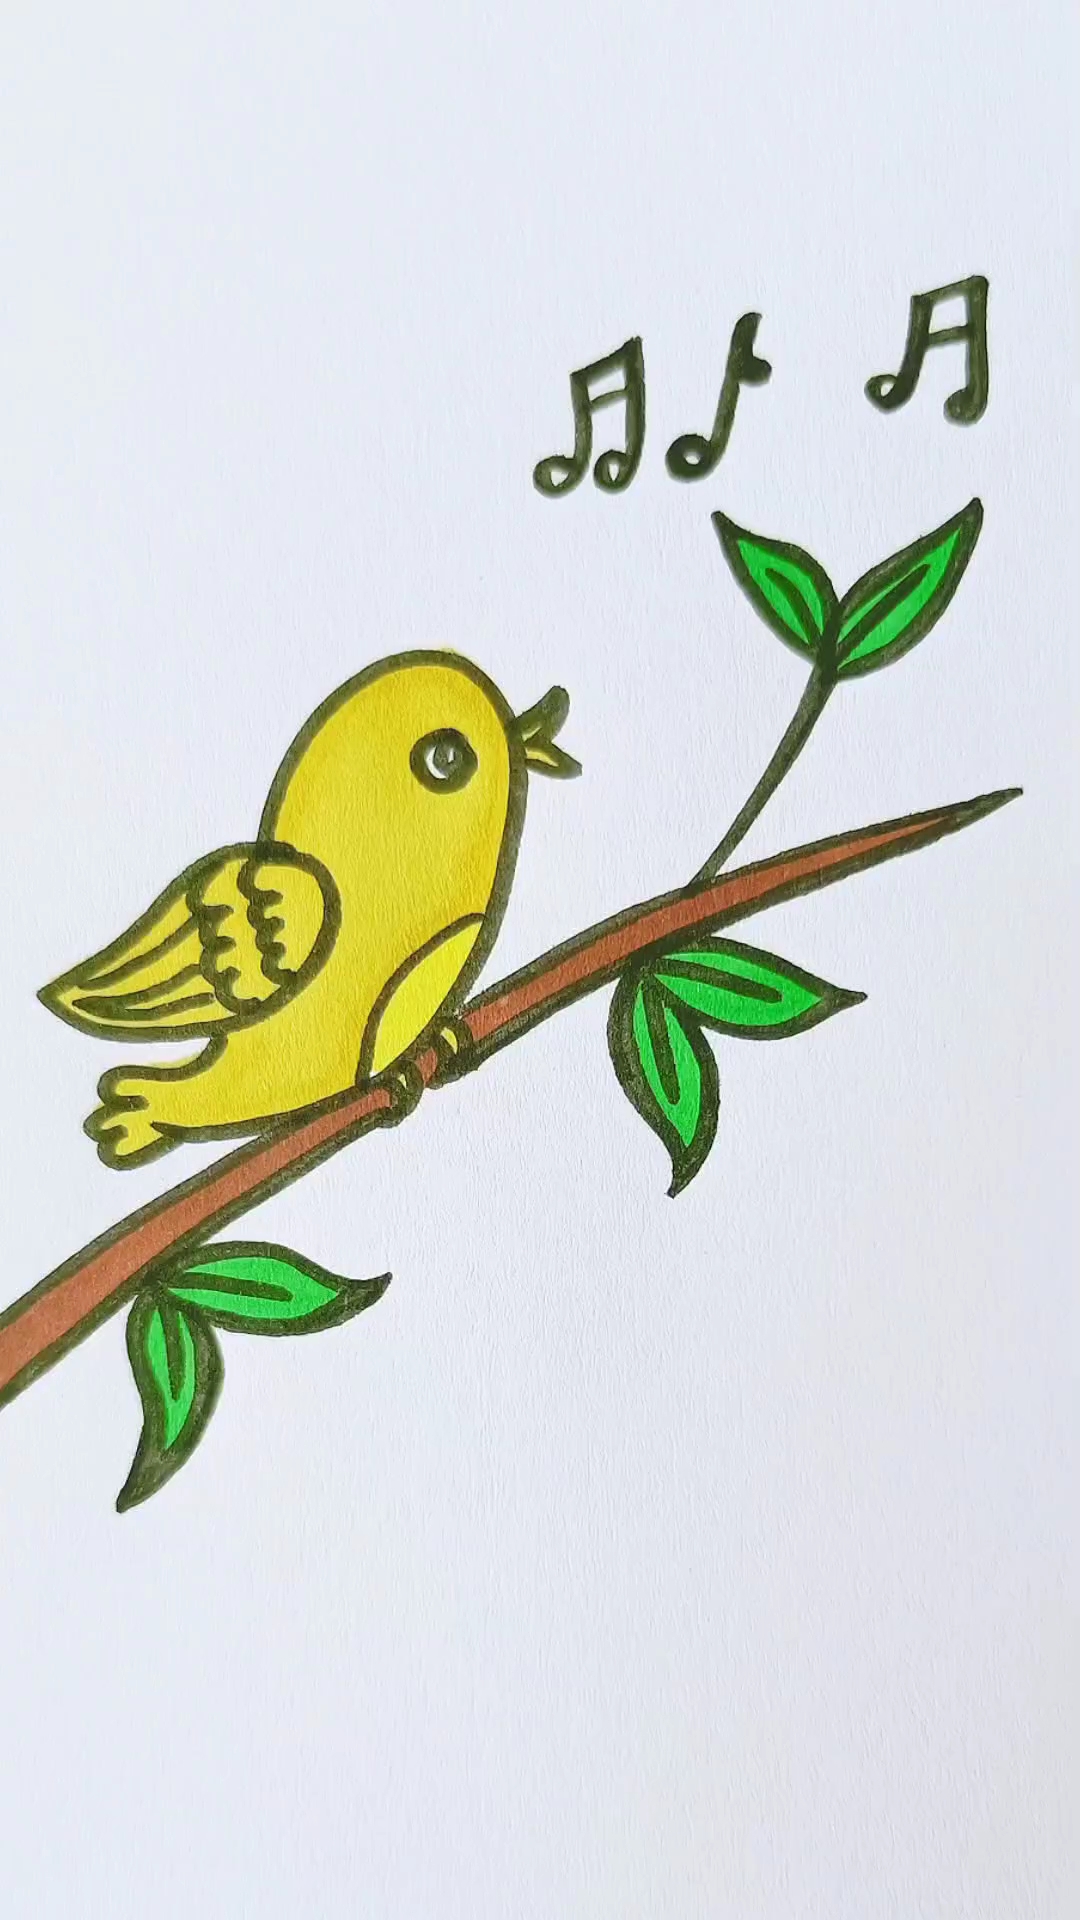 简笔画大树上的小鸟图片